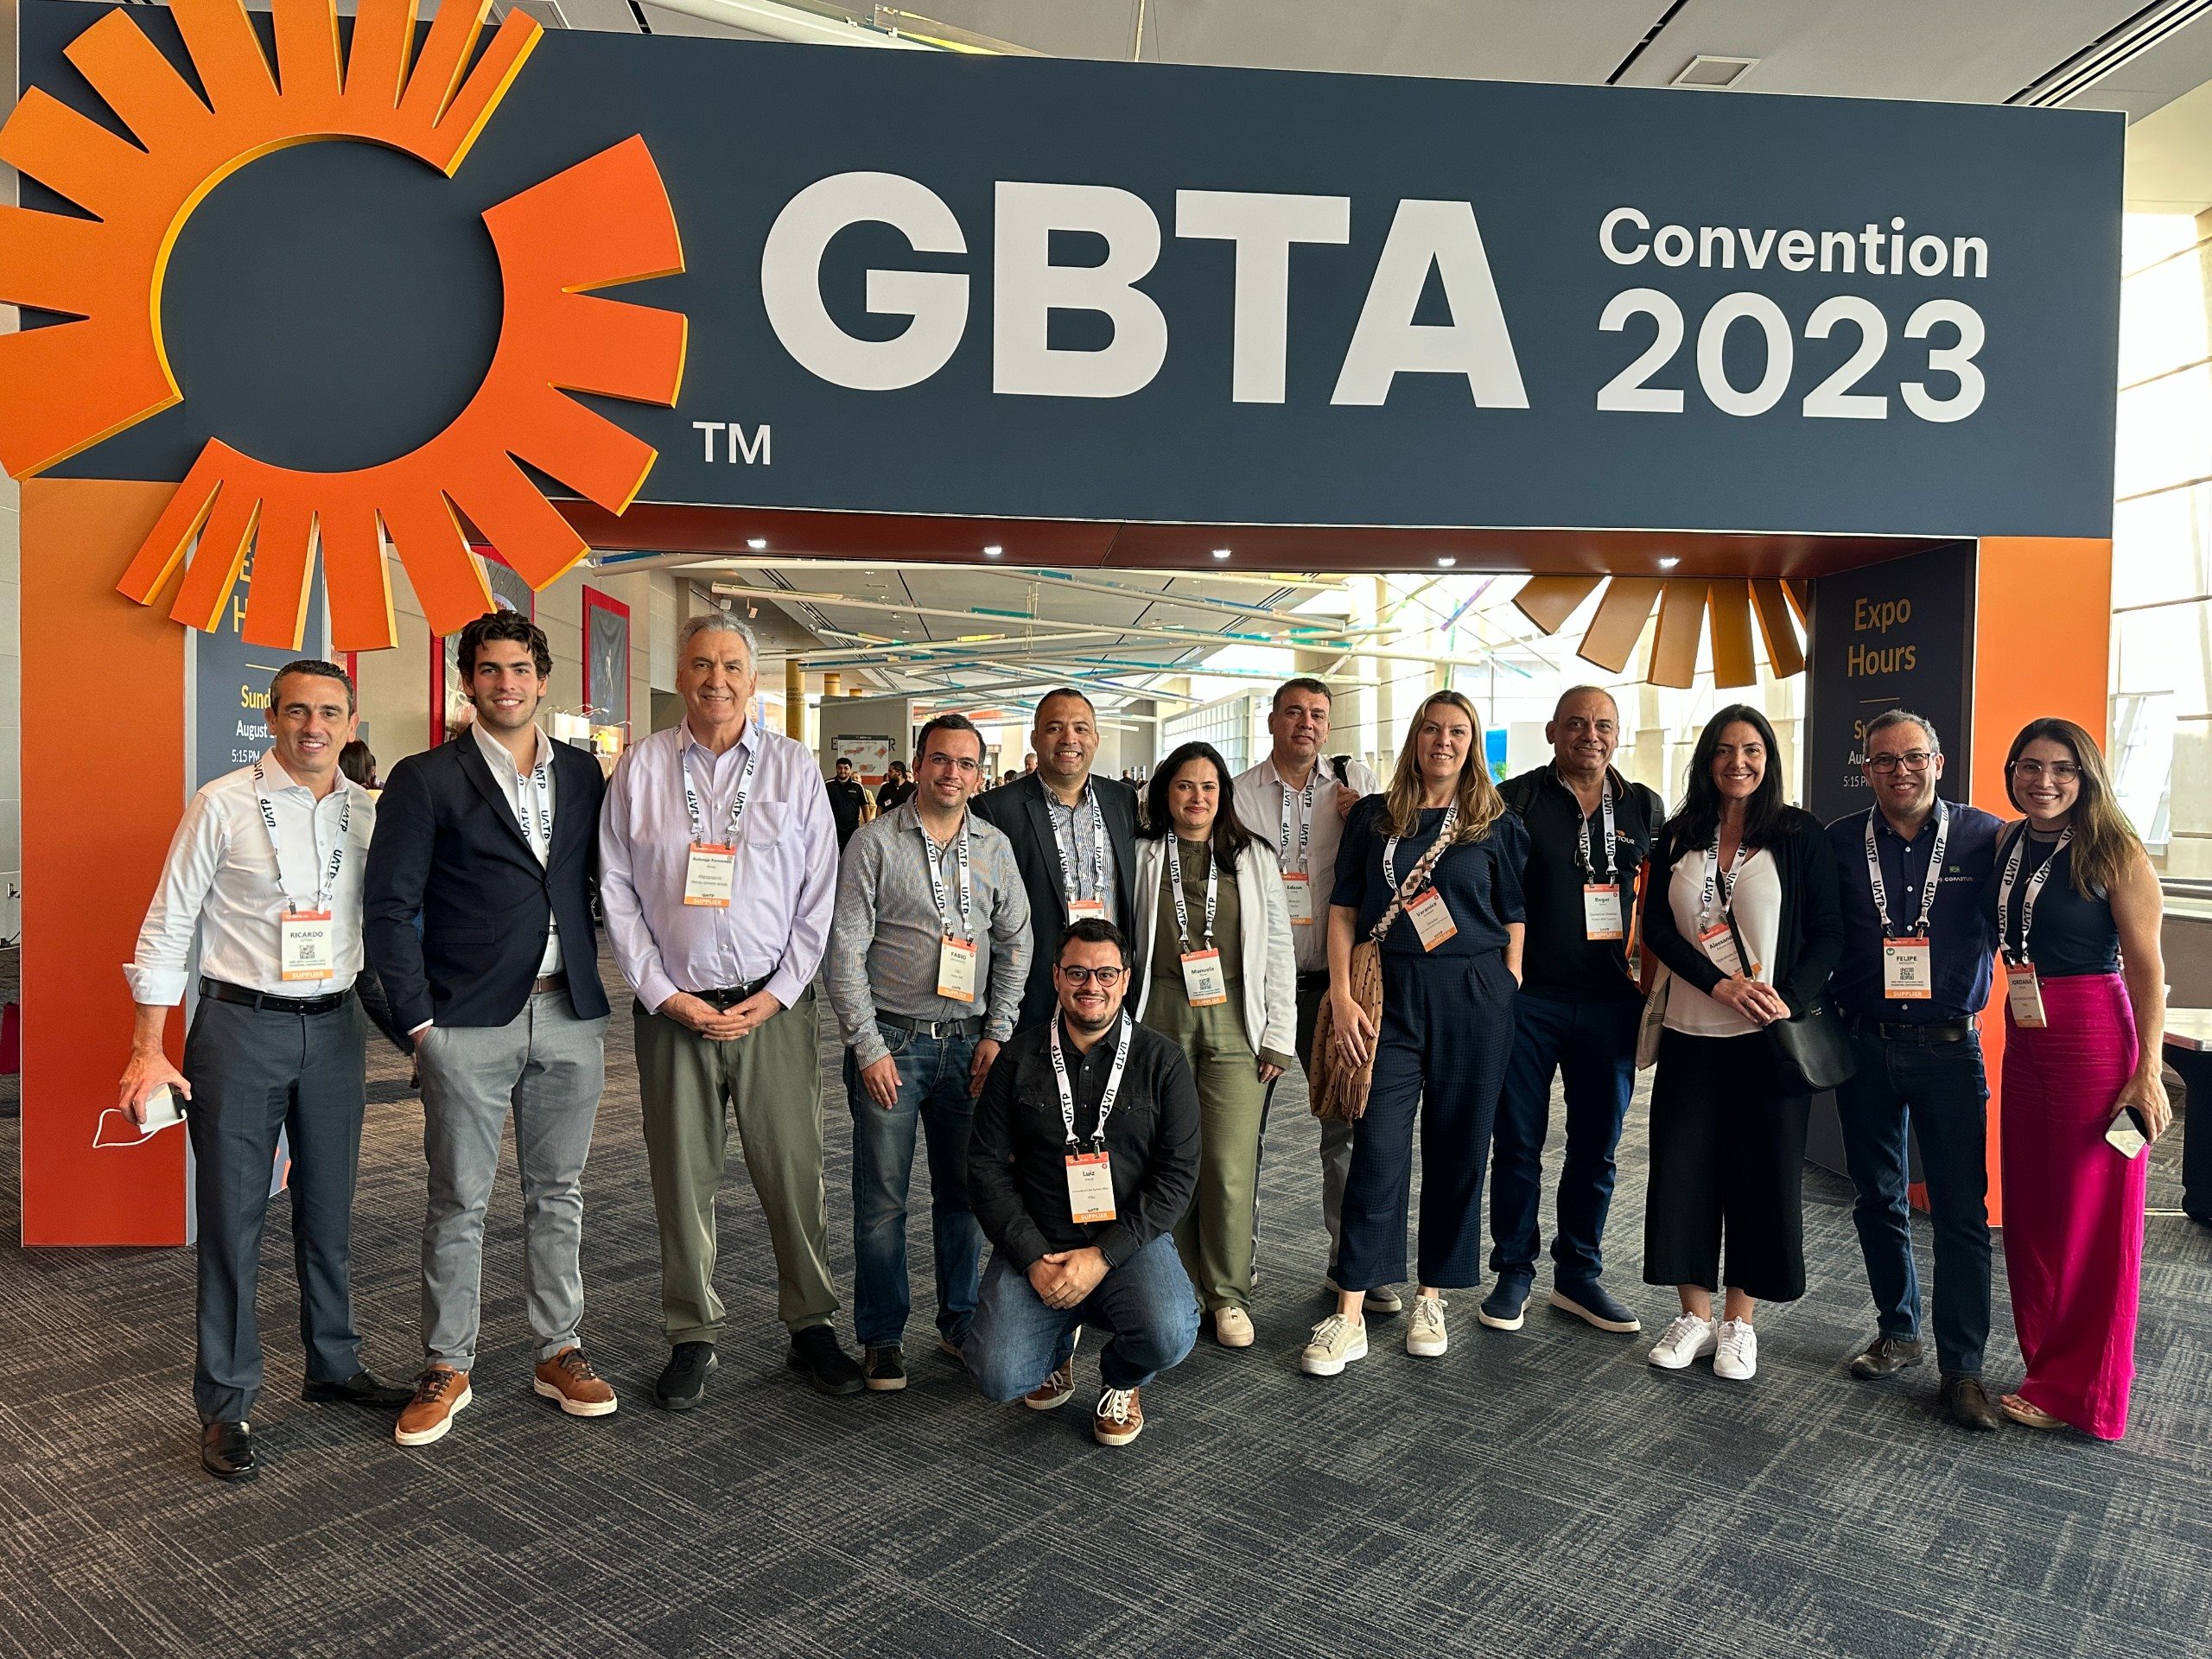 Grupo de TMCs presentes à GBTA 2023: Copastur, Avipam, Stabia, BeFly e Voll (na foto, faltam os representantes da Kontik e Costa Brava)